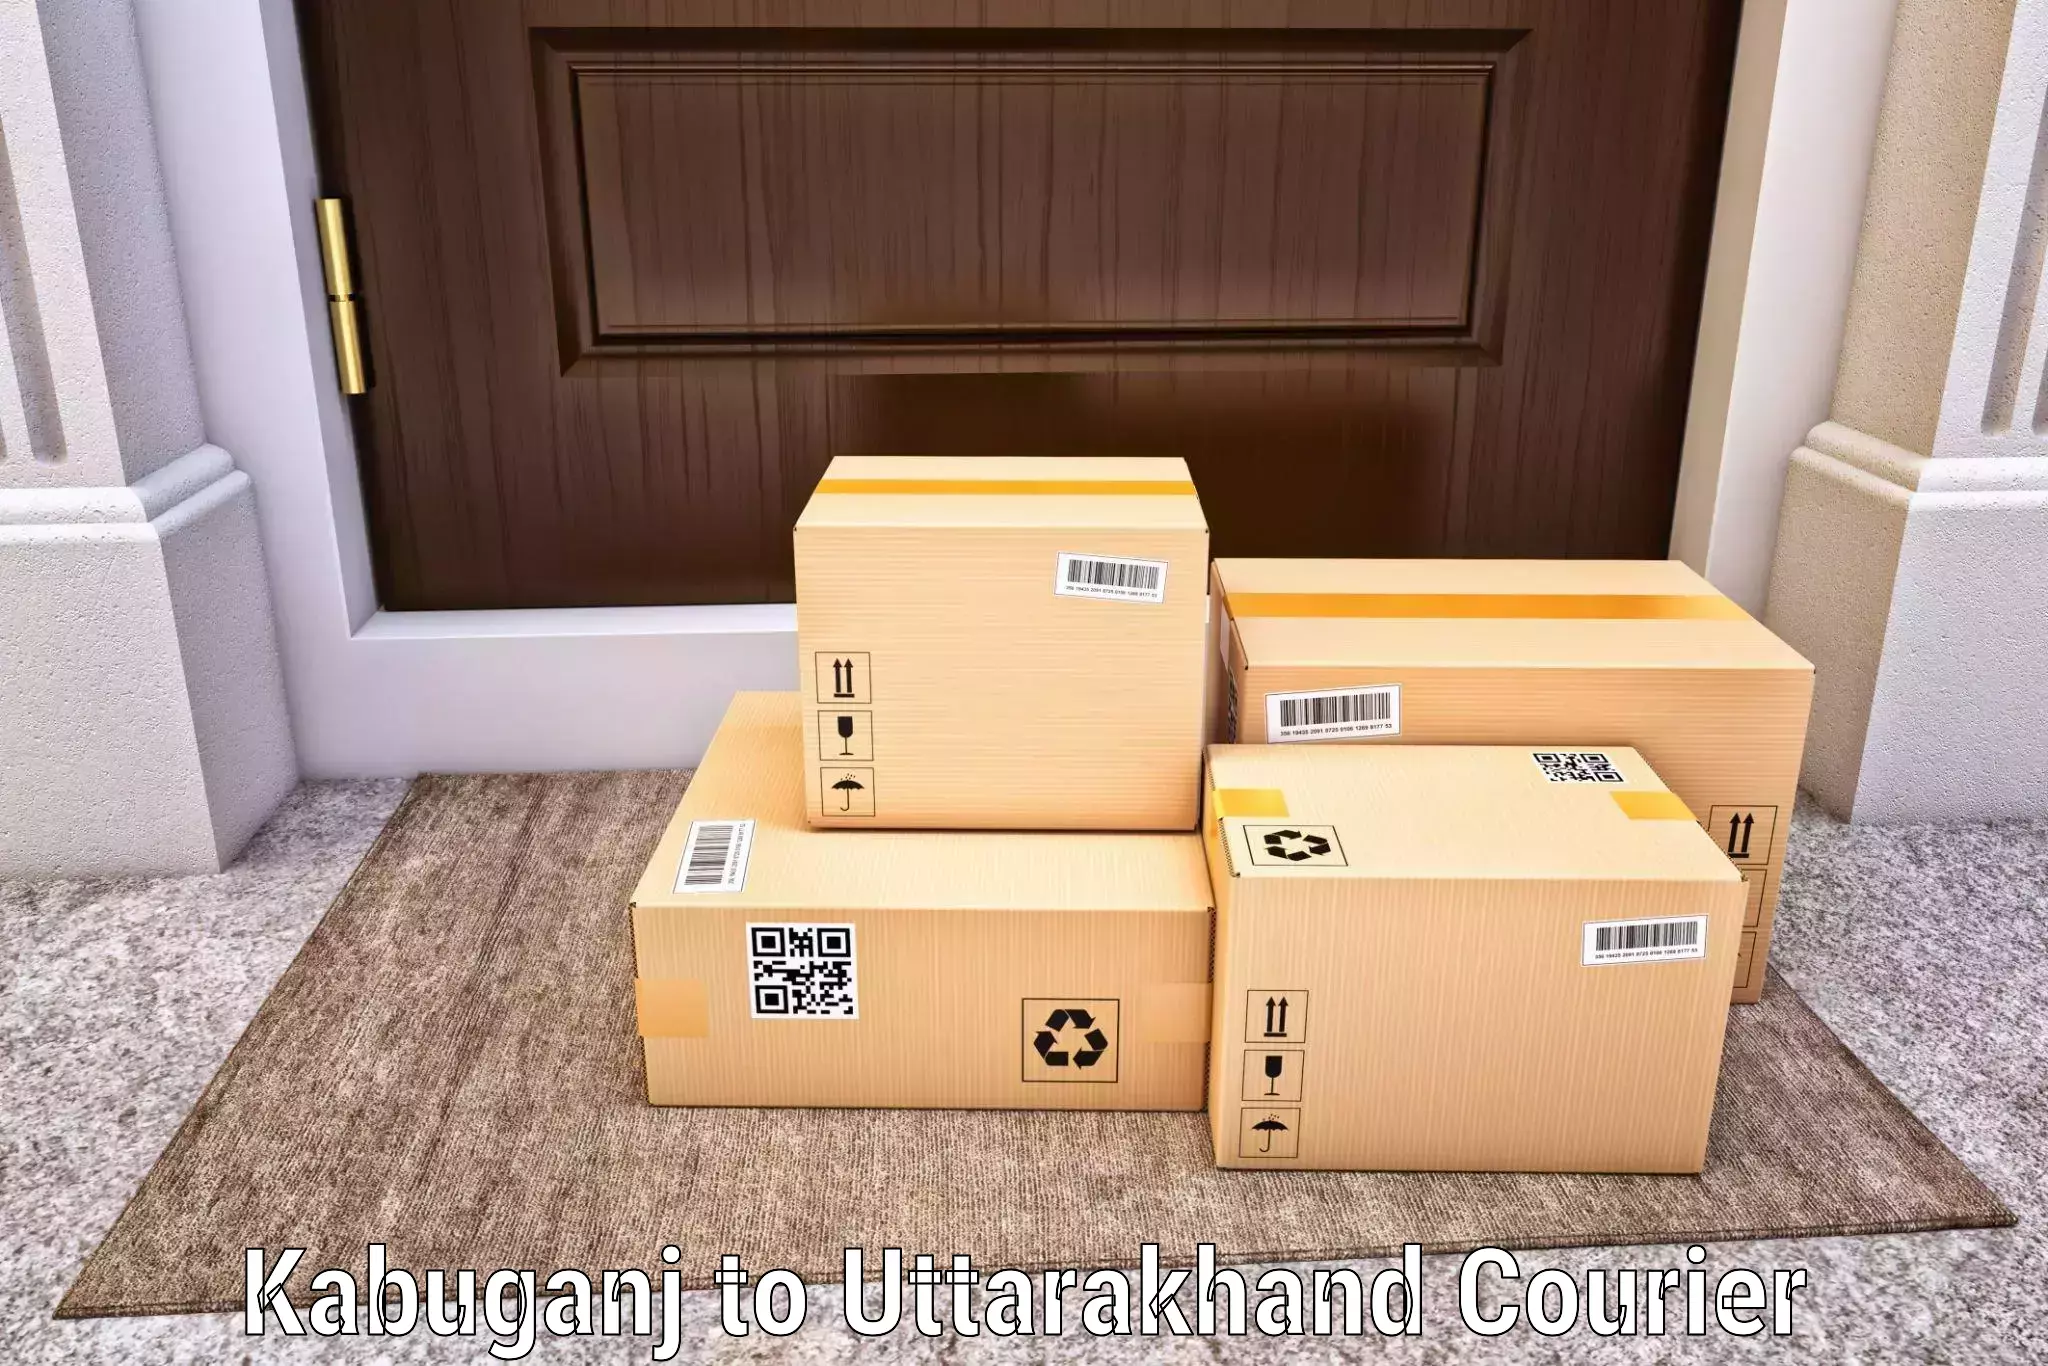 Affordable parcel service in Kabuganj to Satpuli